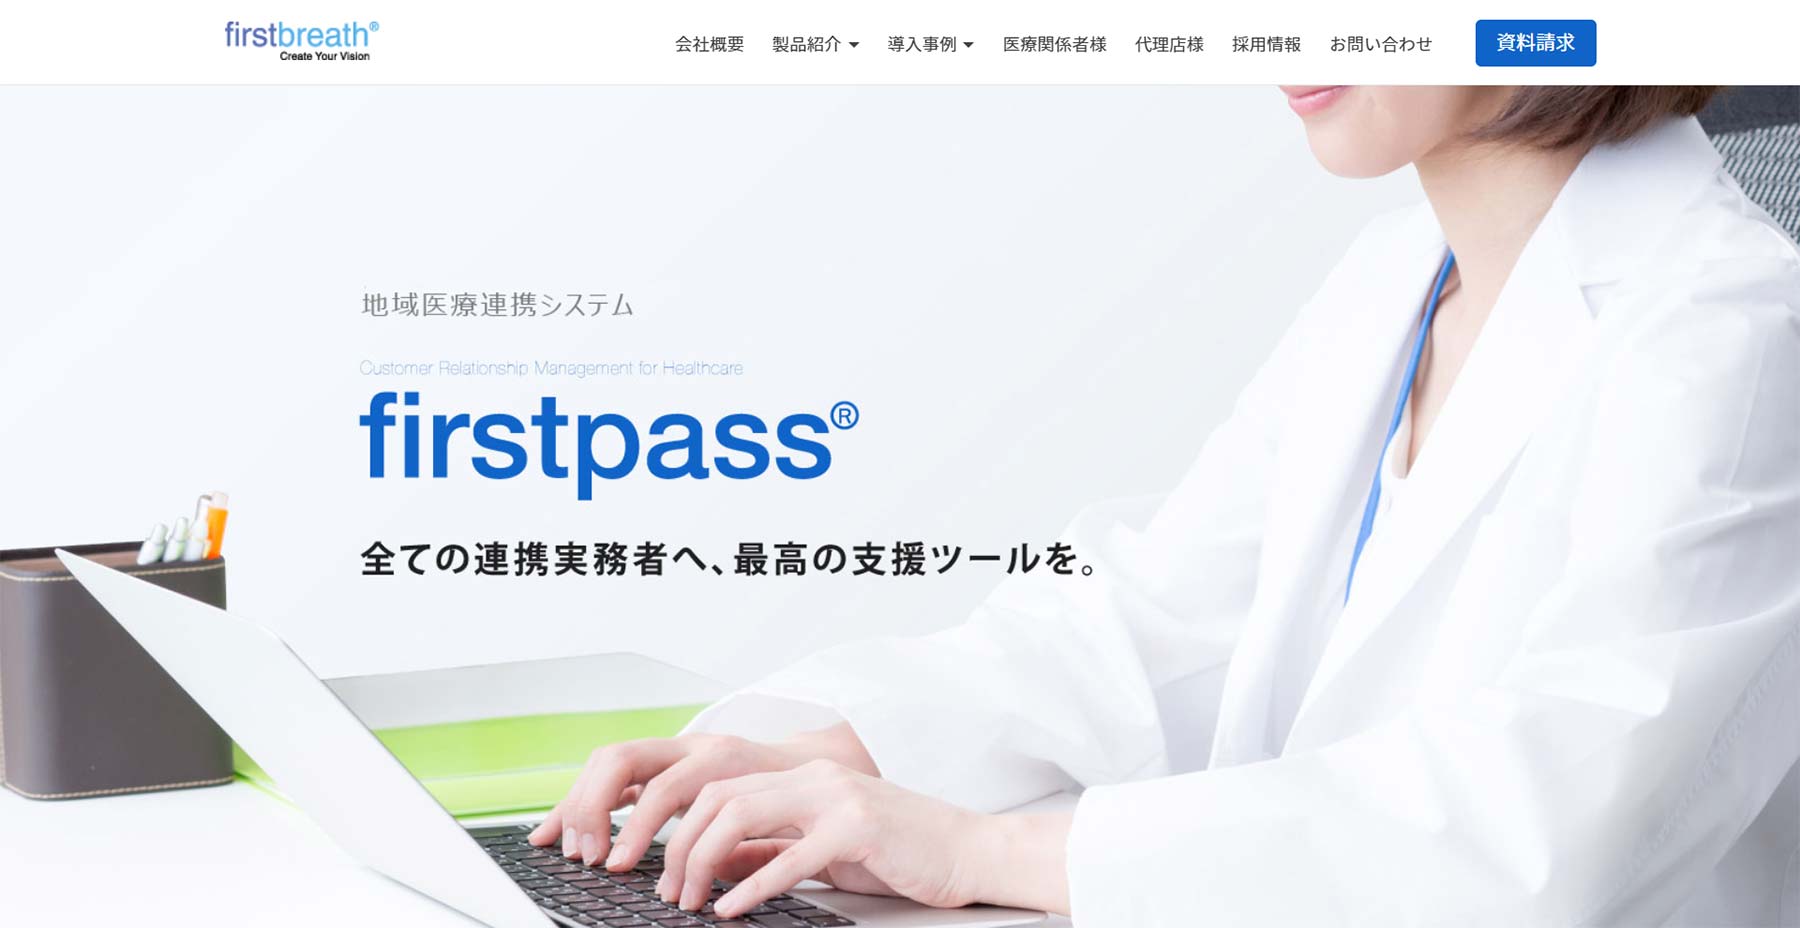 firstpass®公式Webサイト